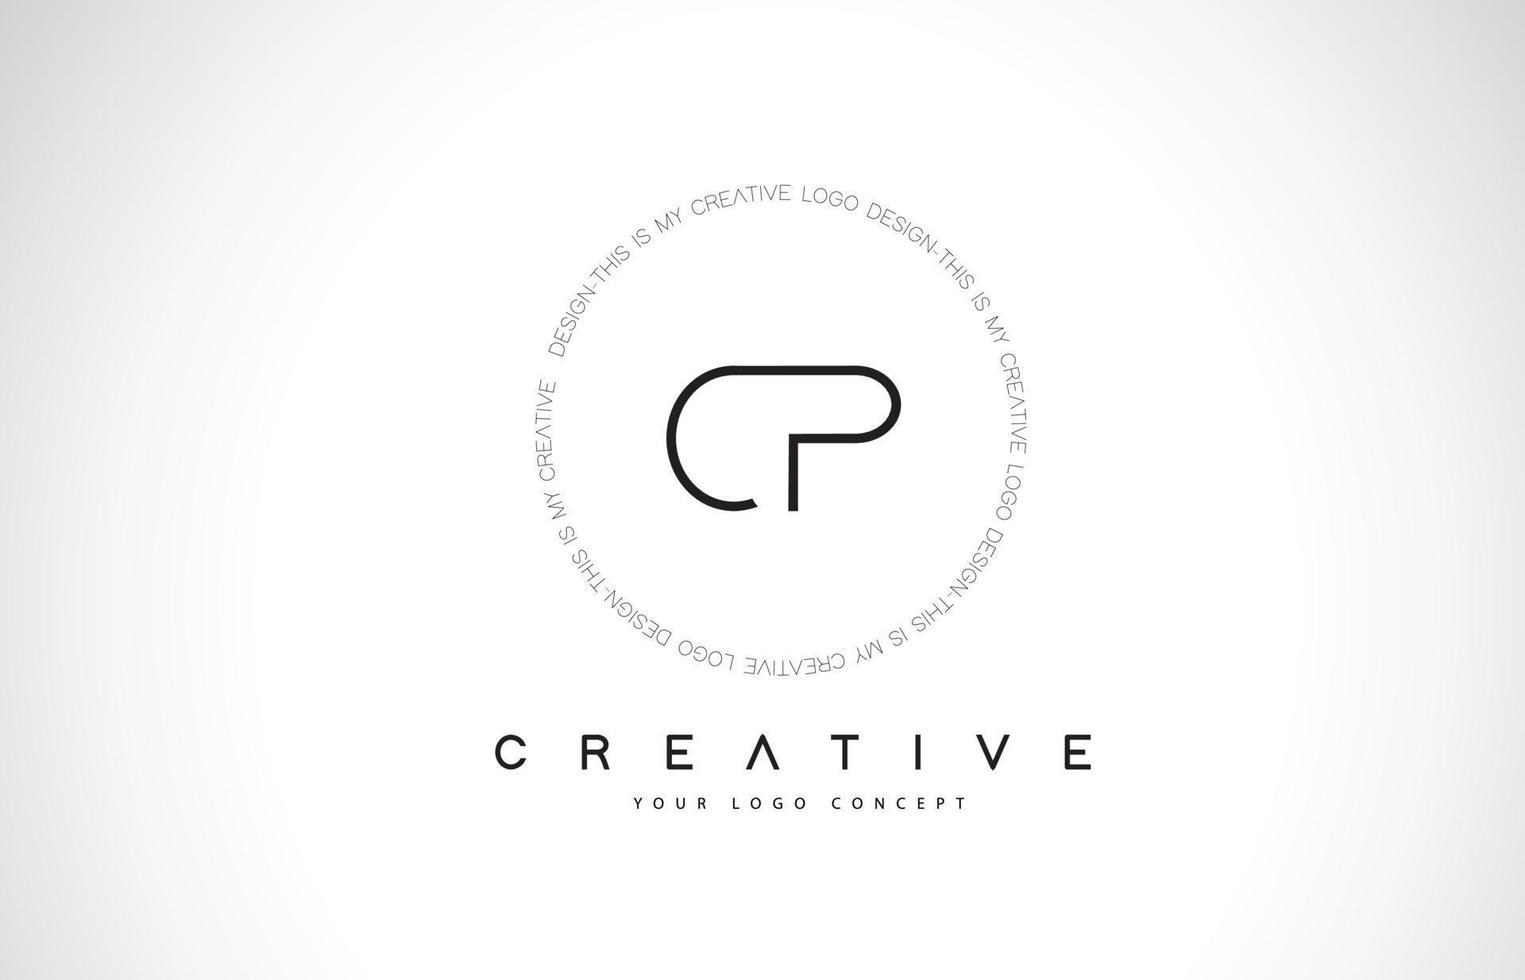 Diseño de logotipo cp cp con vector de letra de texto creativo en blanco y negro.